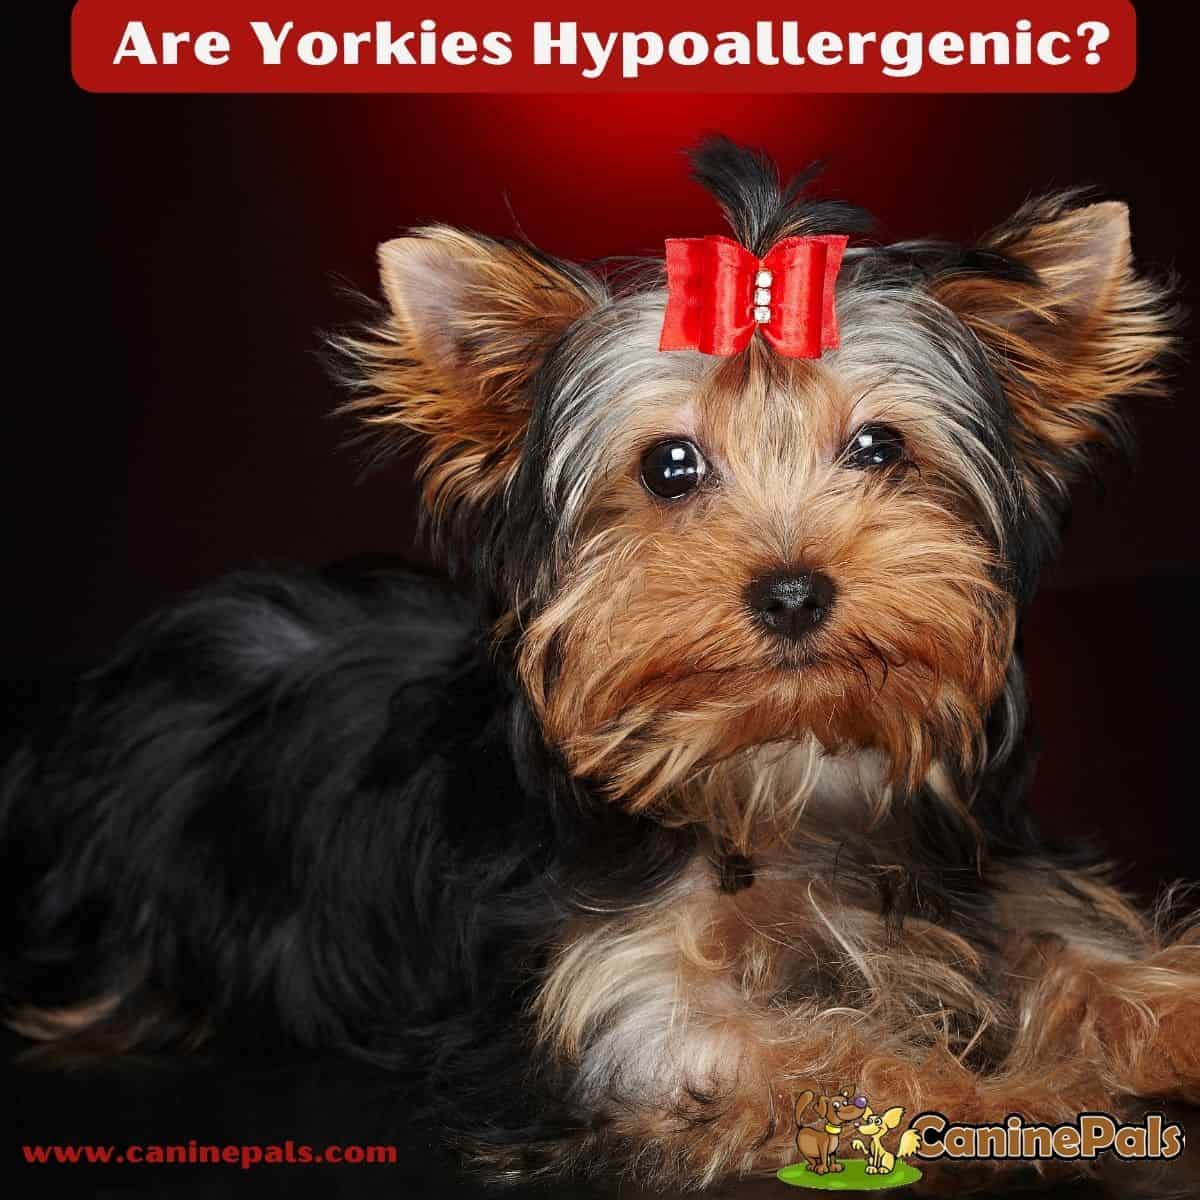 Are Yorkies Hypoallergenic?